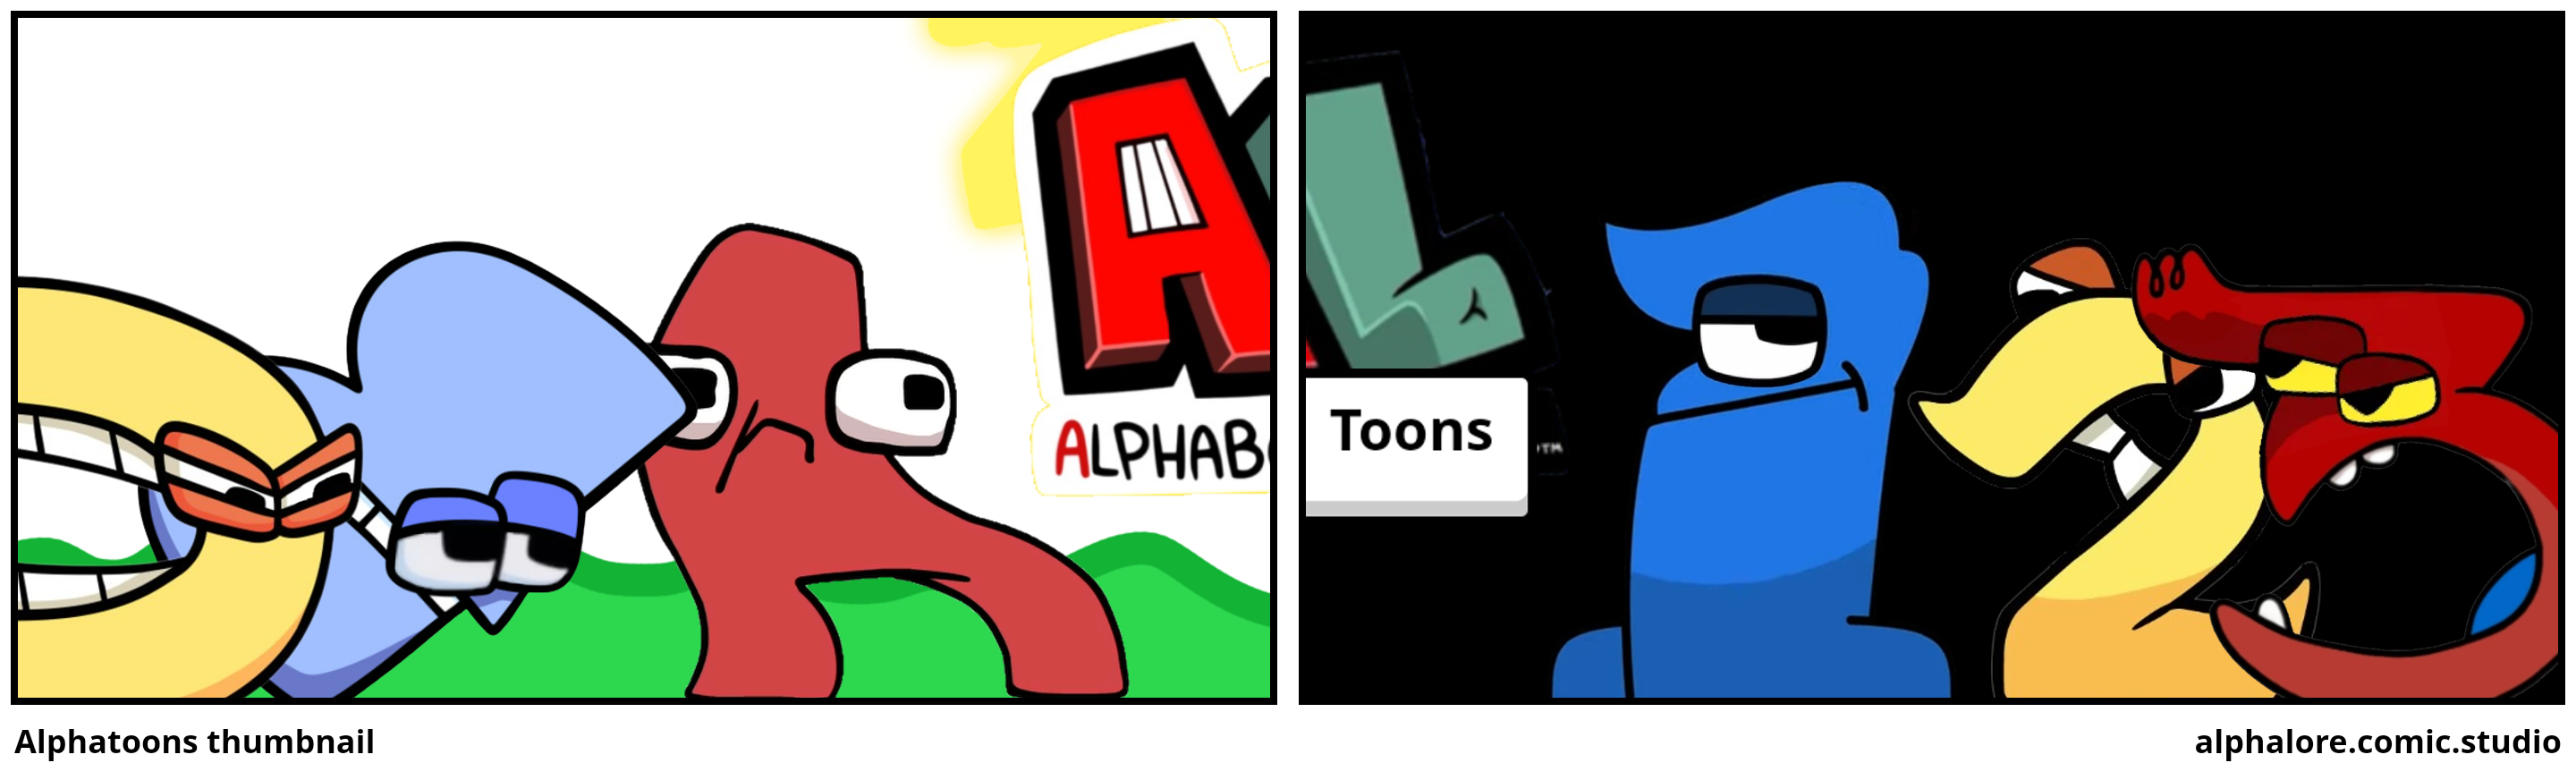 Alphatoons thumbnail